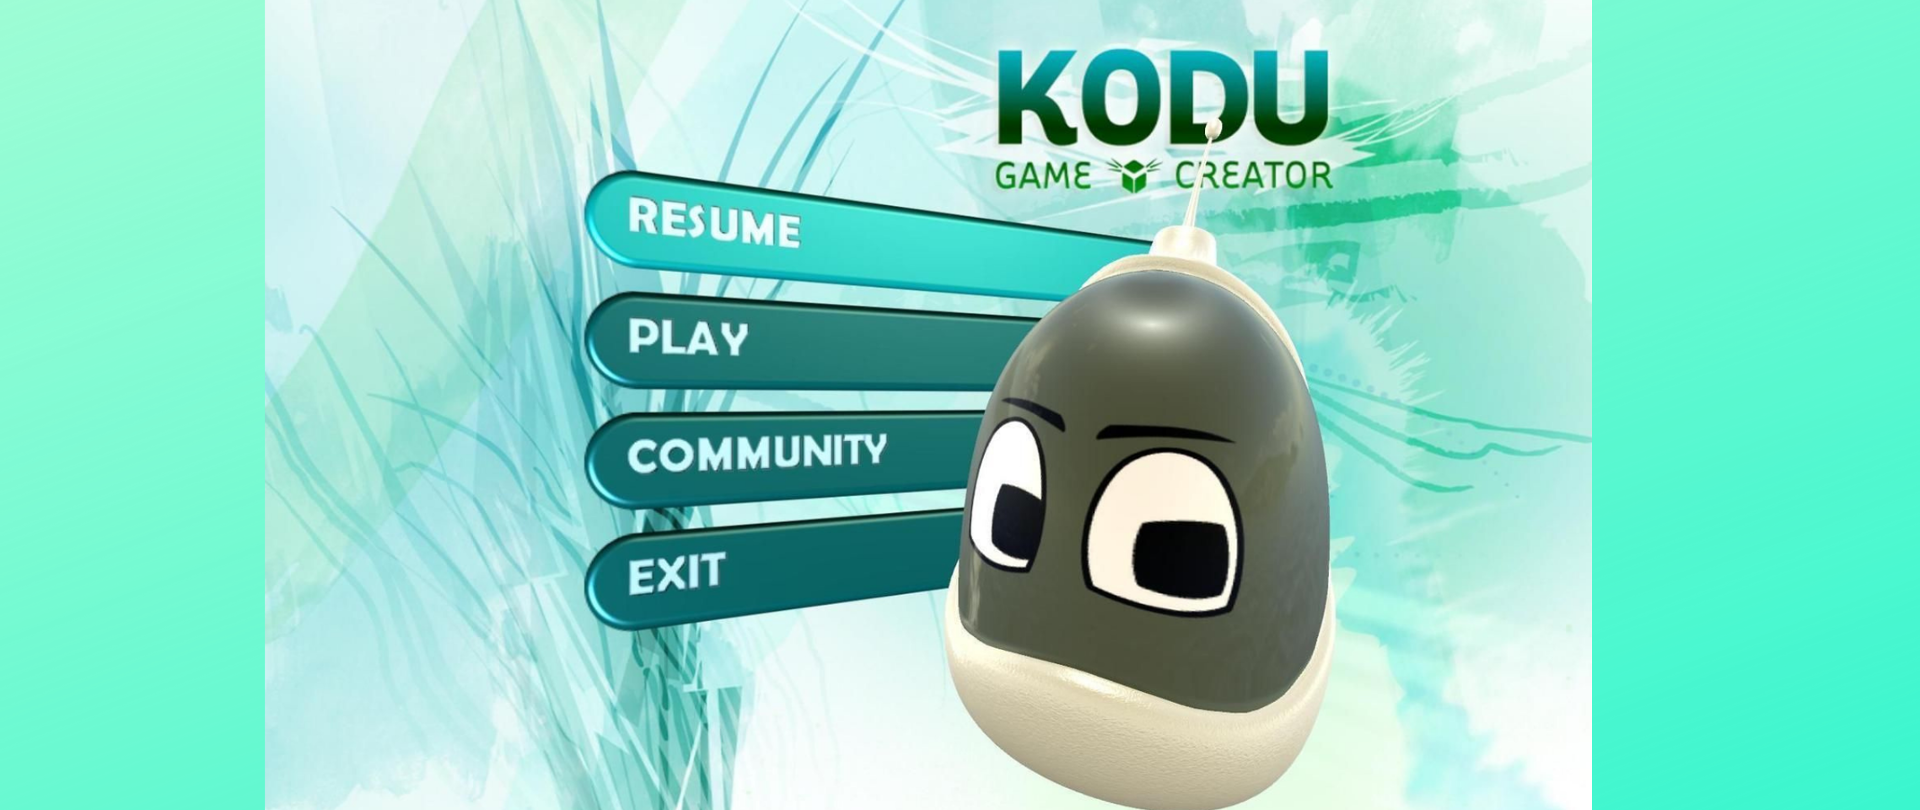 Grafika ma kolor miętowy. Na środku widać postać z gry KODU GAME CREATOR, na tle 4 przycisków: RESUME, PLAY, COMMUNITY oraz EXIT.